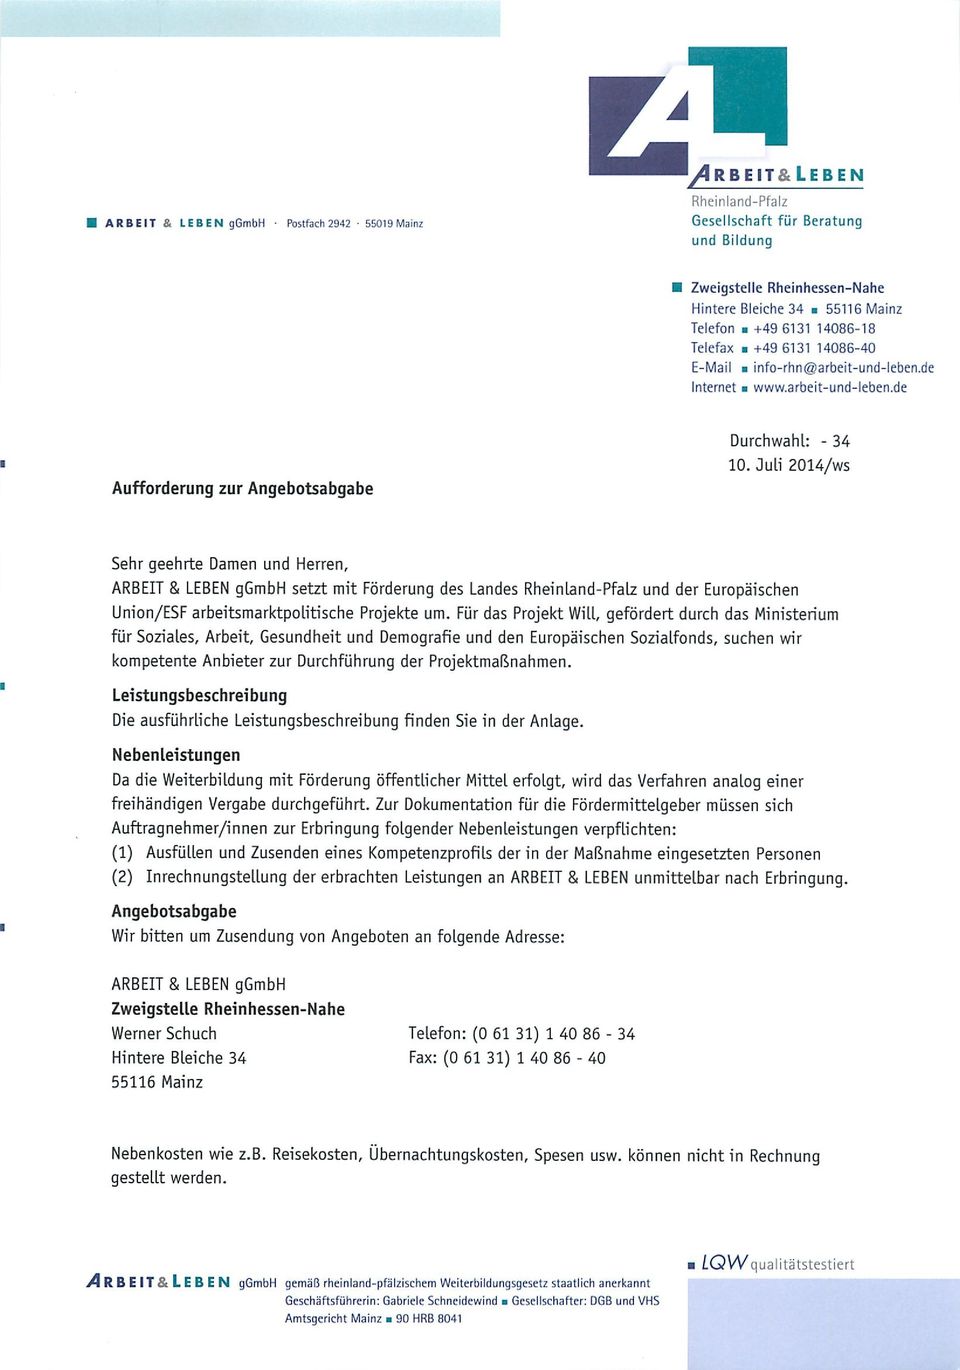 Juli 2014/ws Sehr geehrte Damen und Herren, ARBEIT & LEBEN ggmbh setzt mit Förderung des Landes Rheinland-Pfalz und der Europäischen Union/ESF arbeitsmarktpolitische Projekte um.